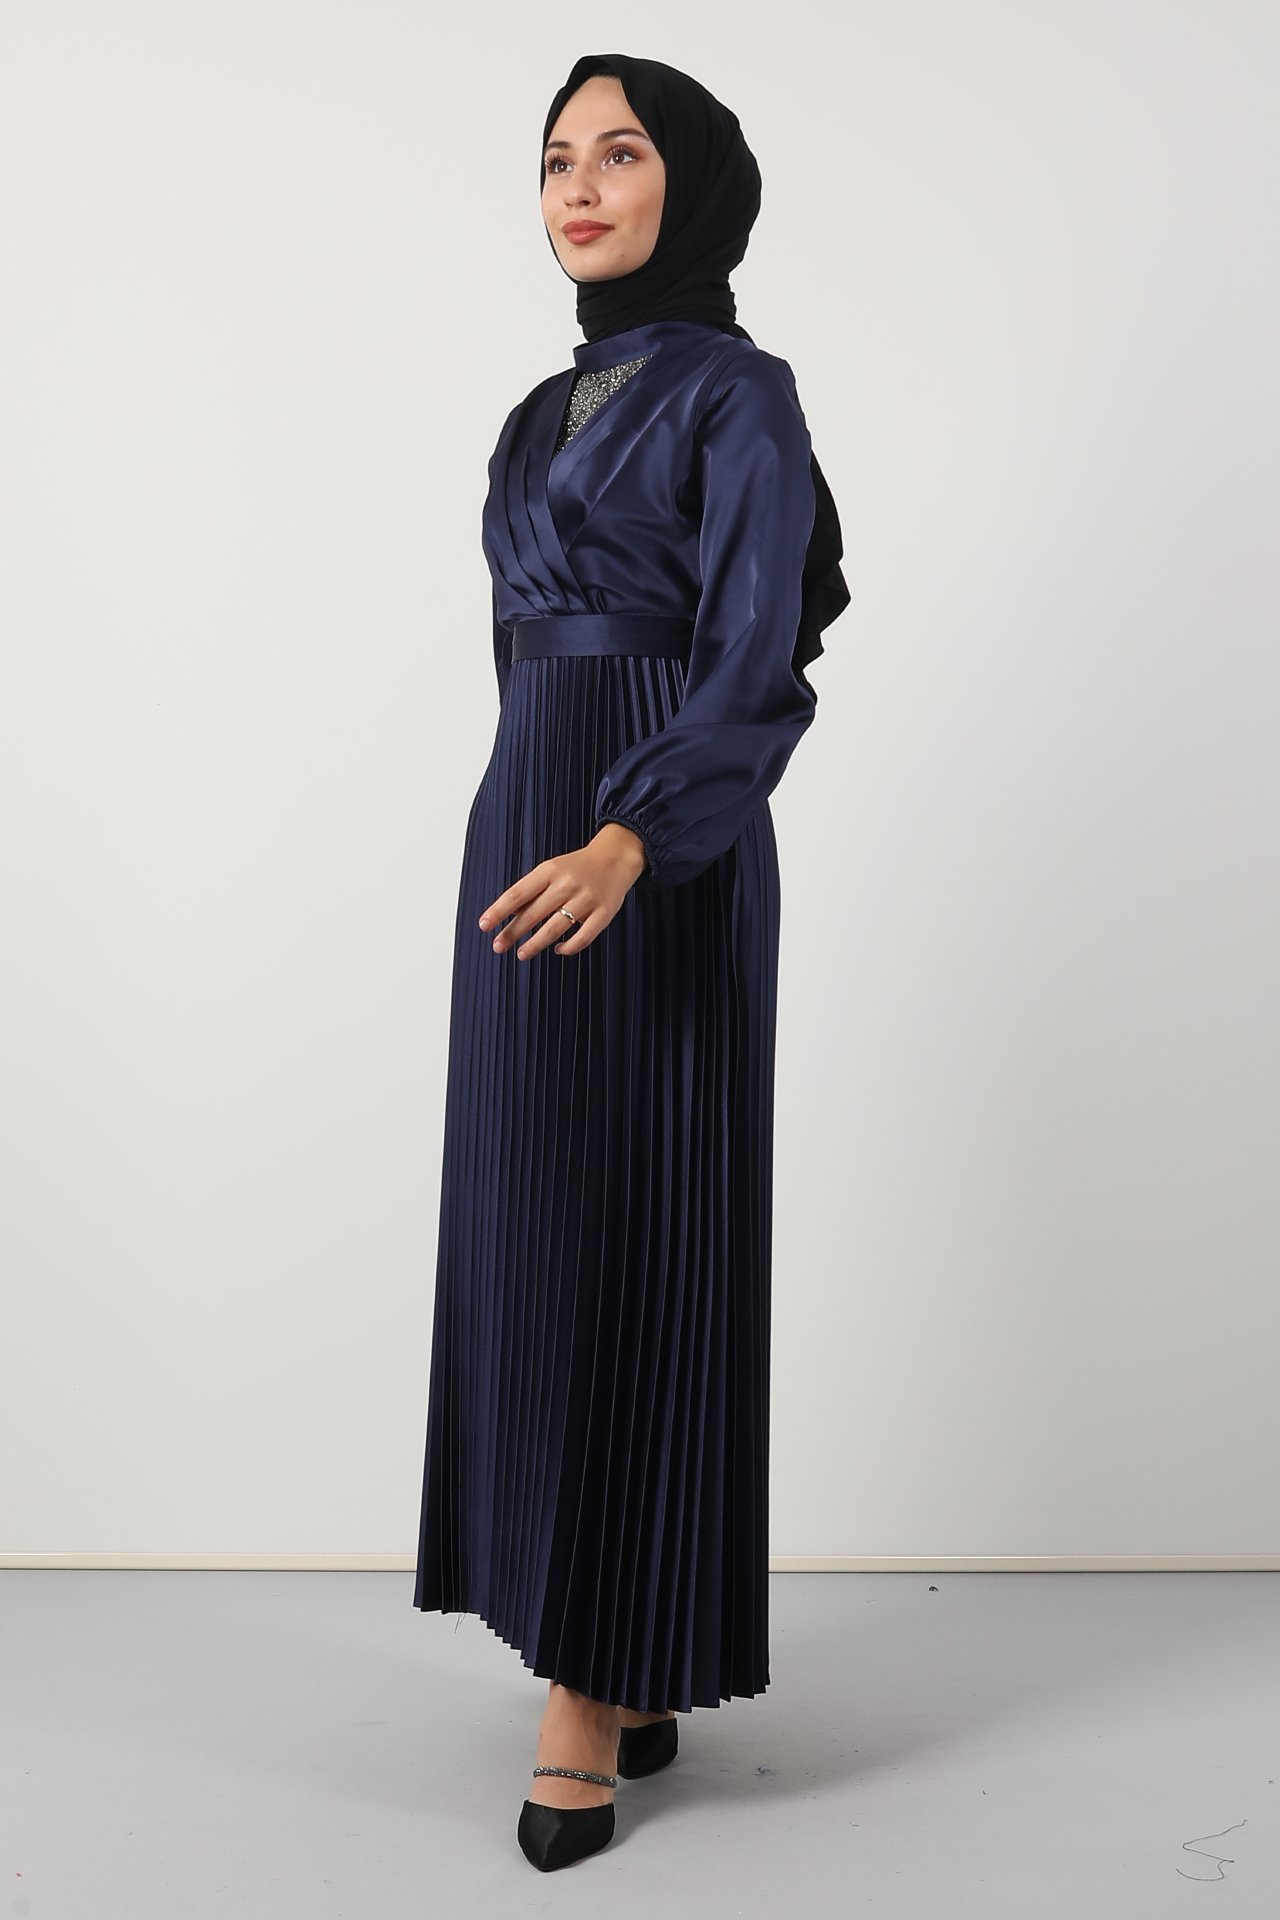 GİZAGİYİM - Göğsü Taş İşlemeli Elbise Lacivert